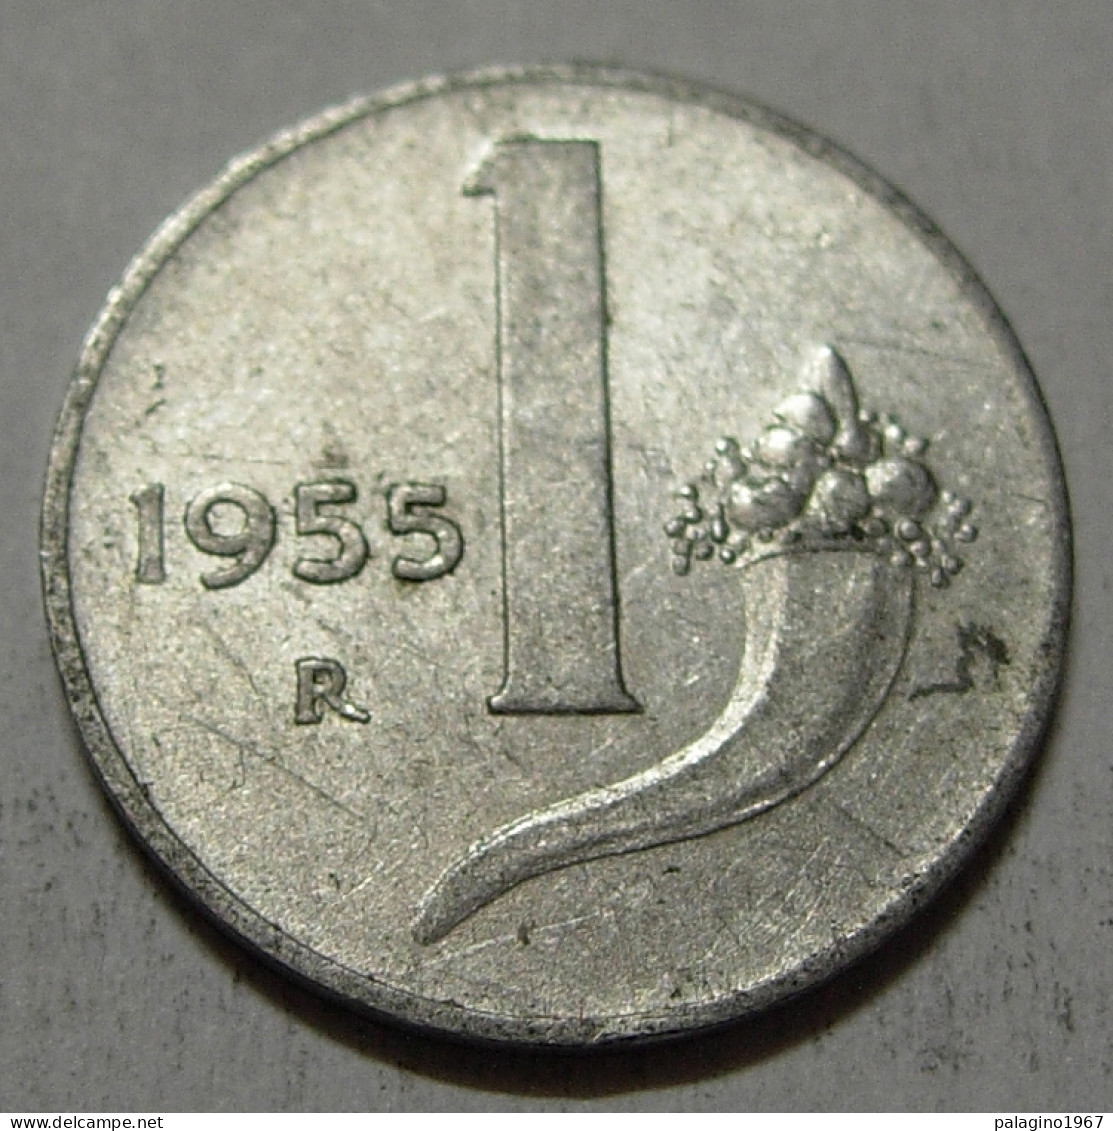 REPUBBLICA ITALIANA 1 Lira Cornucopia 1955 MB QBB  - 1 Lira